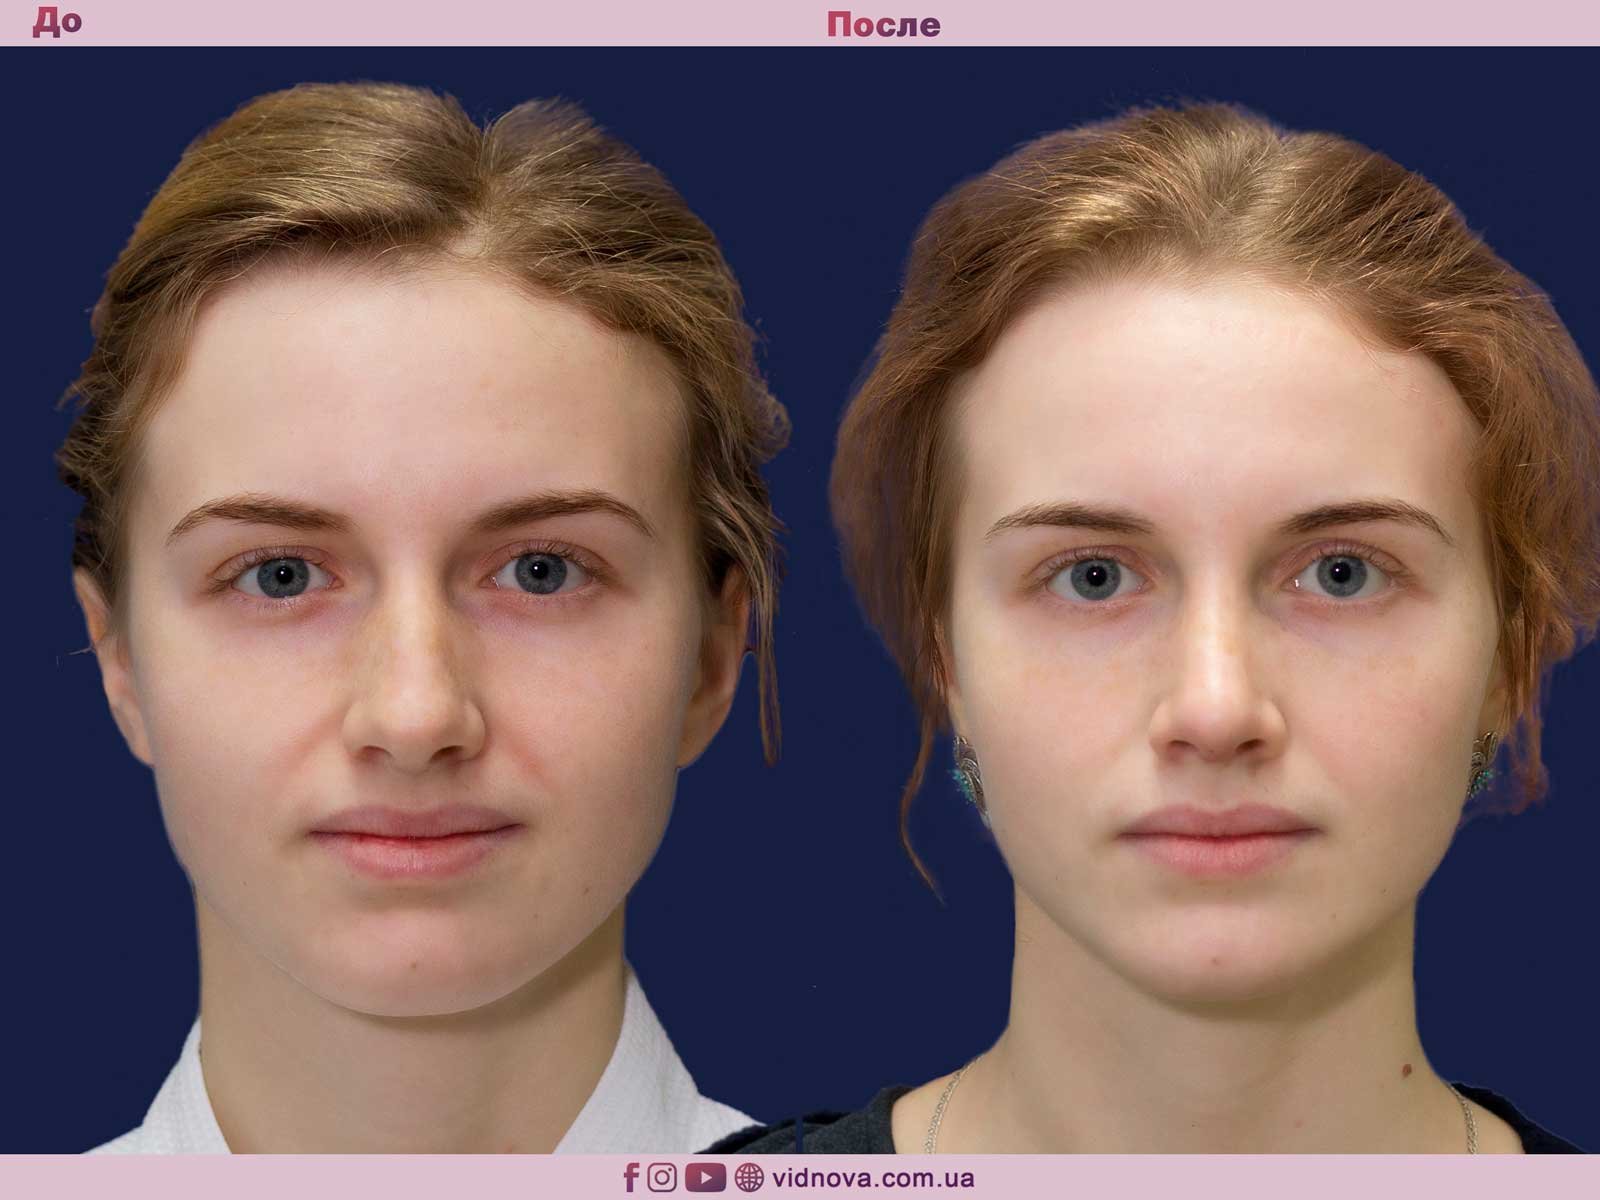 Фото ринопластики до и после нос. Пластика носа. Уранопластика до и после. Пластика кончика носа. Нос до и после ринопластики.